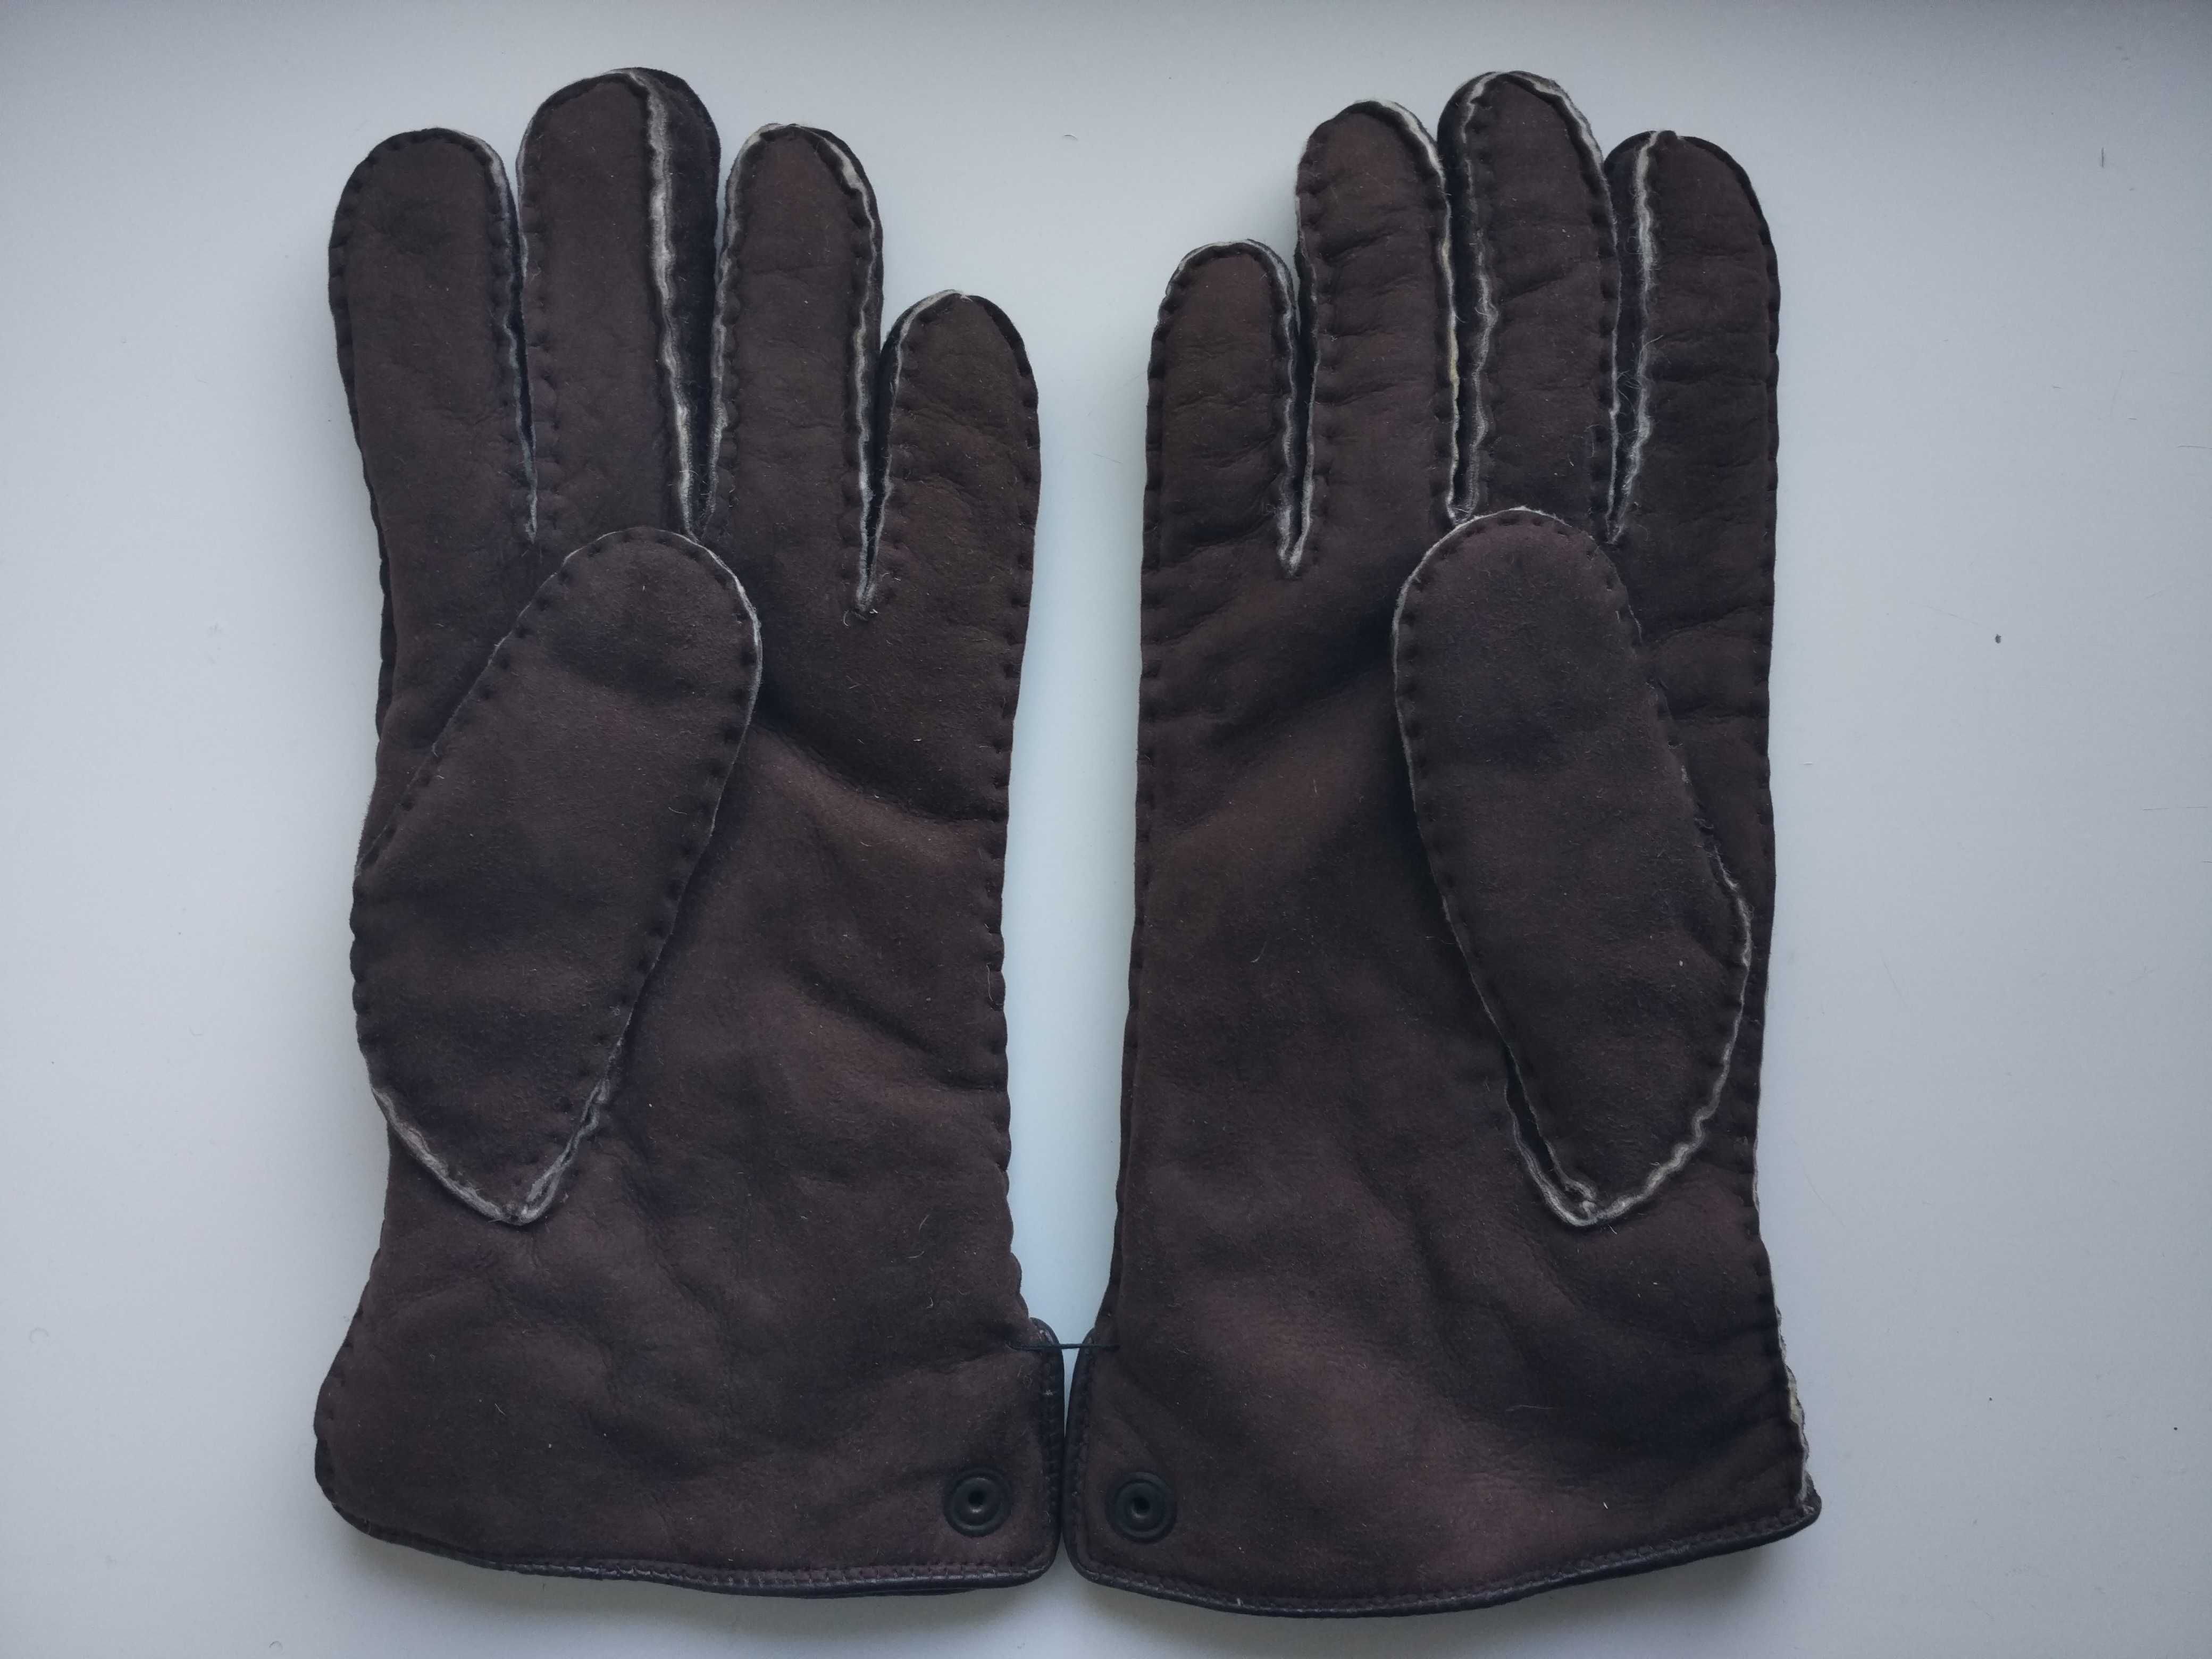 Перчатки мужские кожаные Handschuhpeter H.Eleve, размер 8.5, Австрия